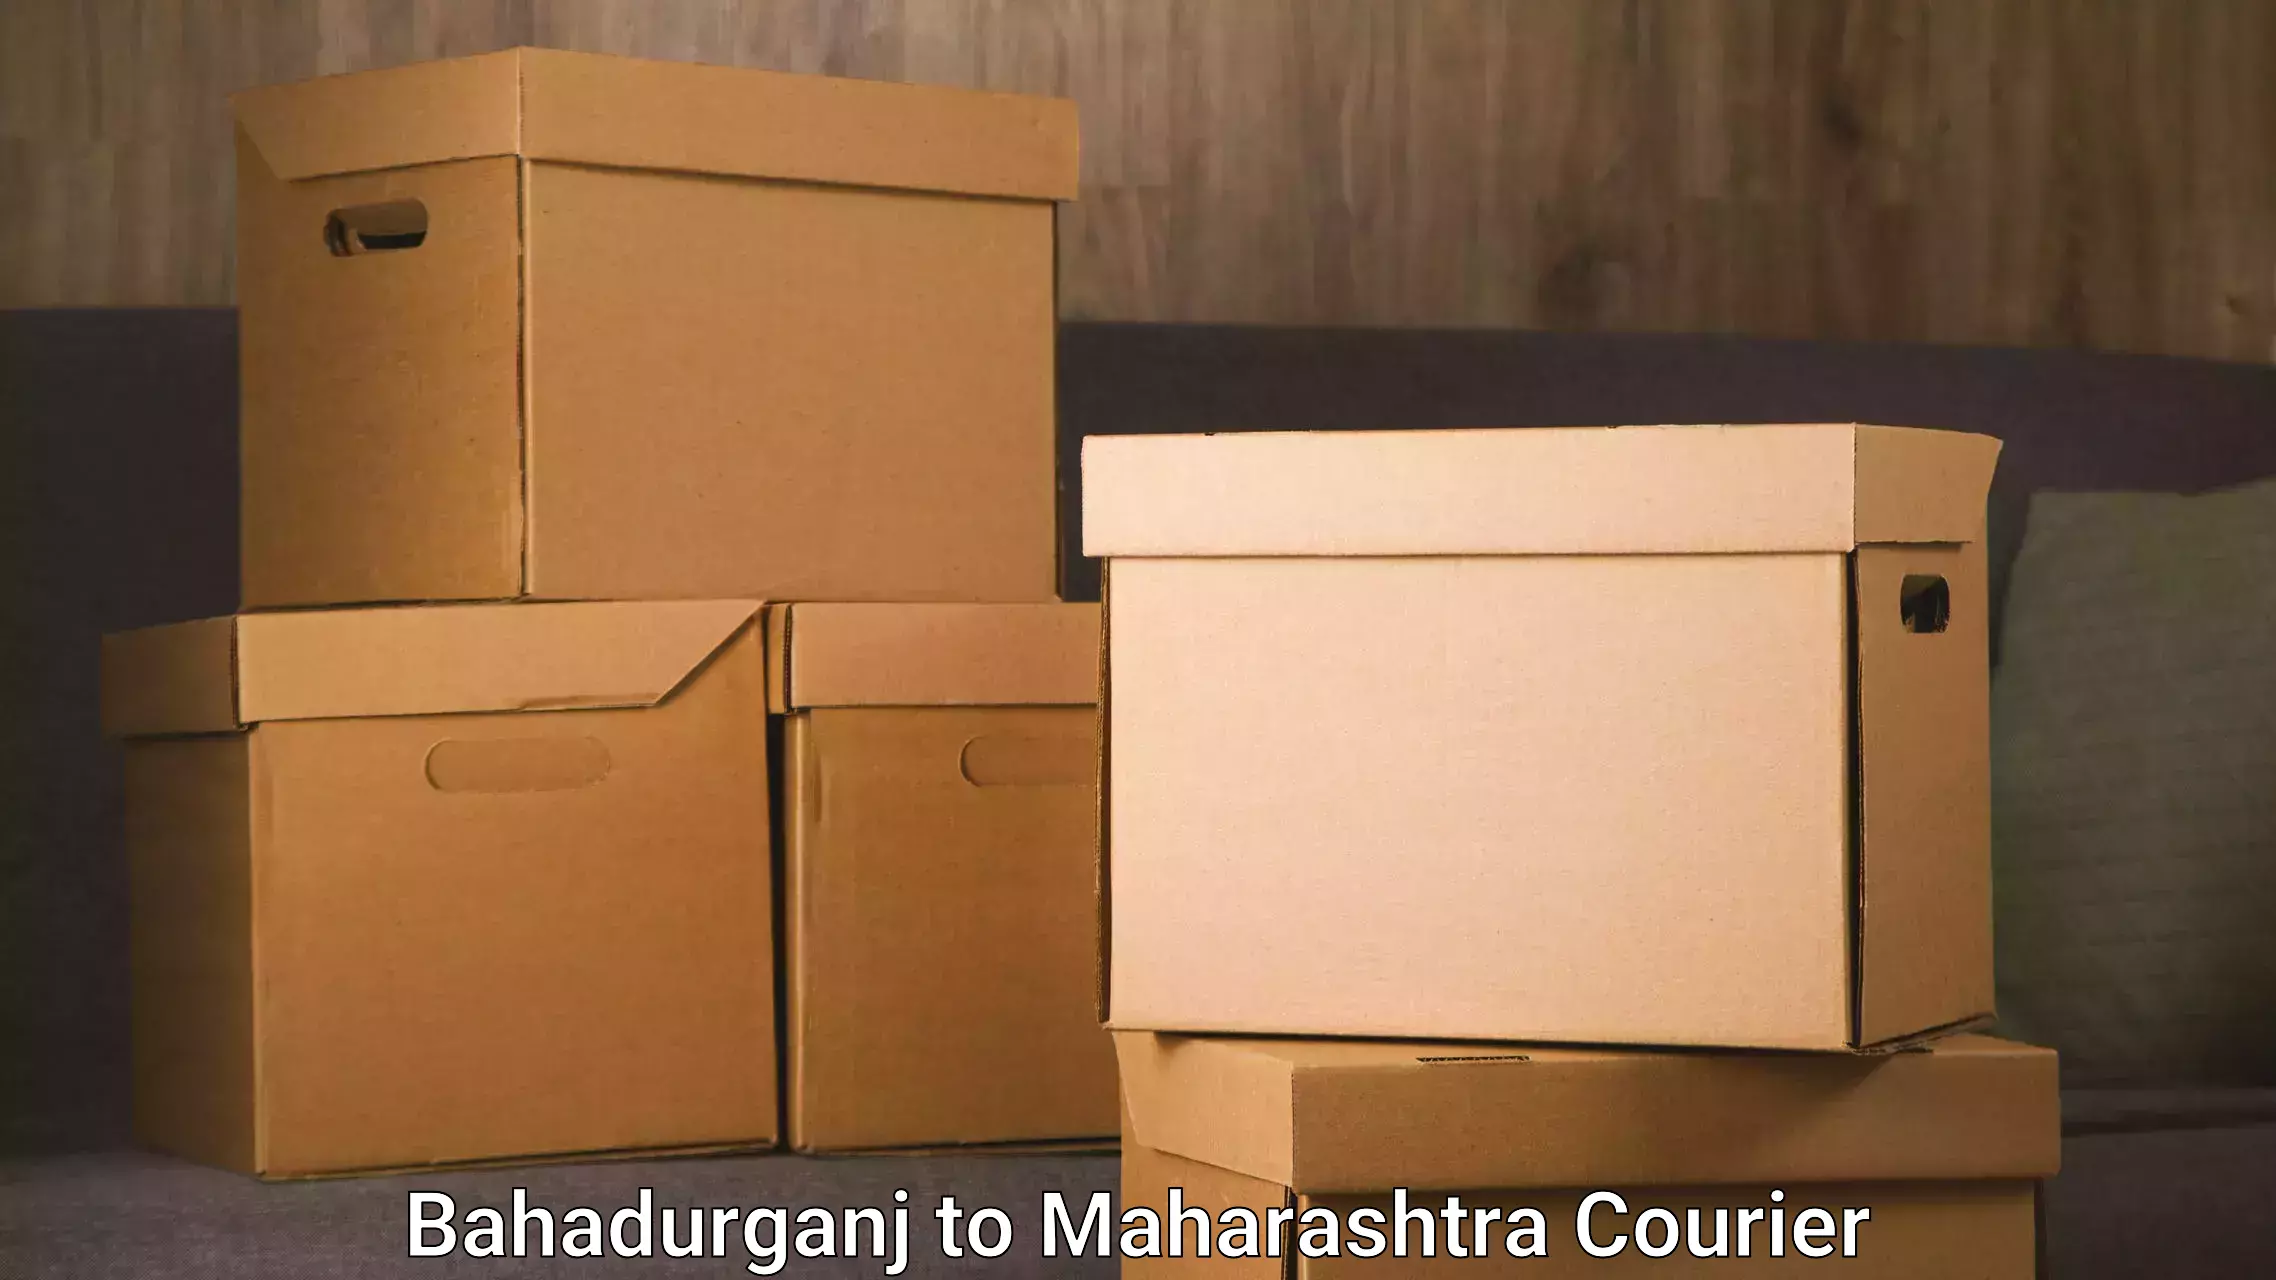 Quality relocation services Bahadurganj to Maharashtra